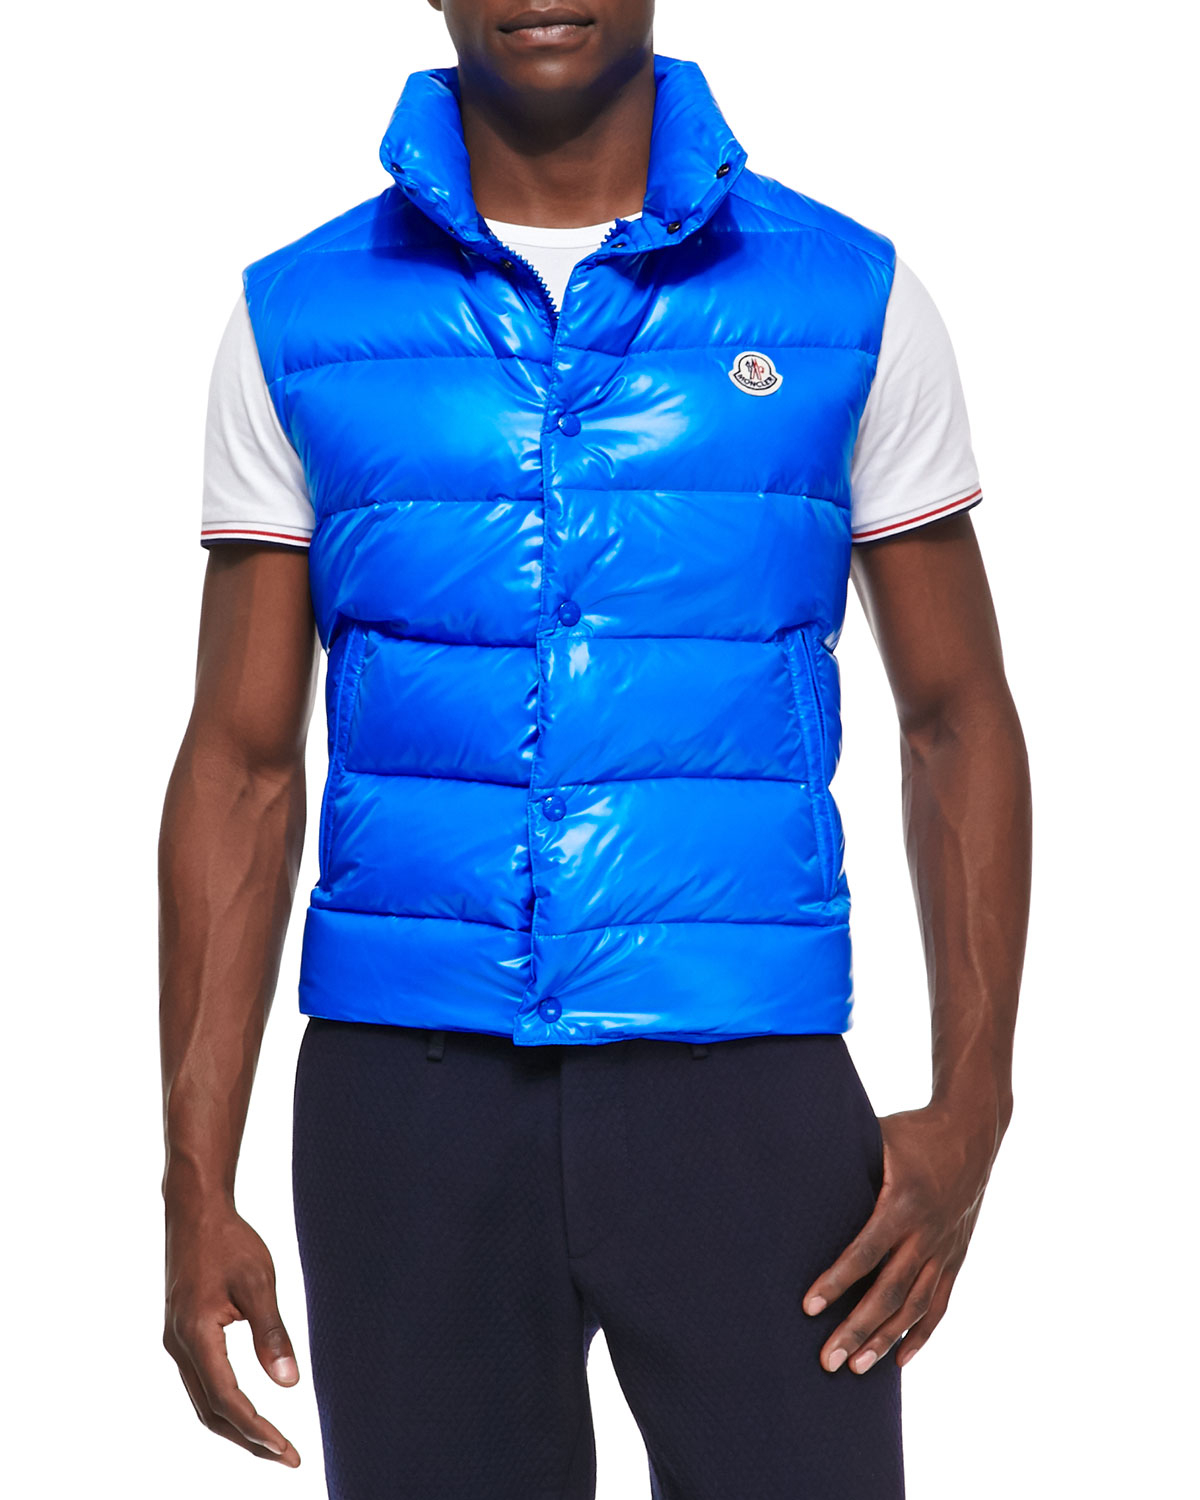 blue vest